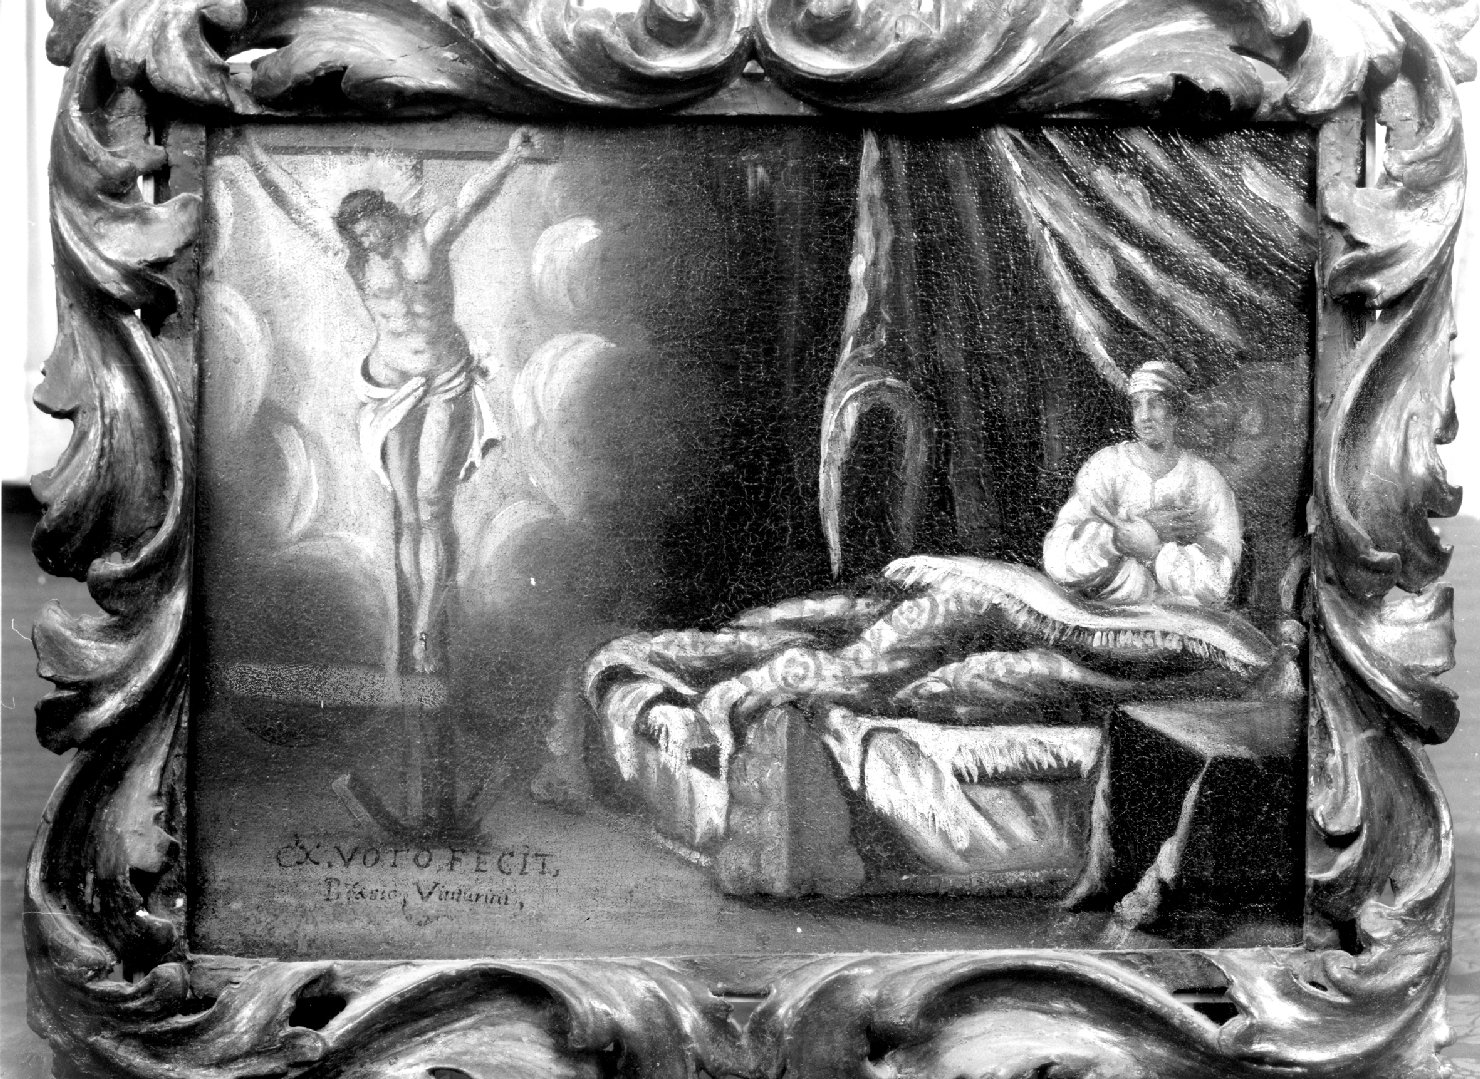 ammalata invoca Cristo crocifisso per la guarigione (ex voto) - ambito veneto (fine/inizio secc. XVII/ XVIII)